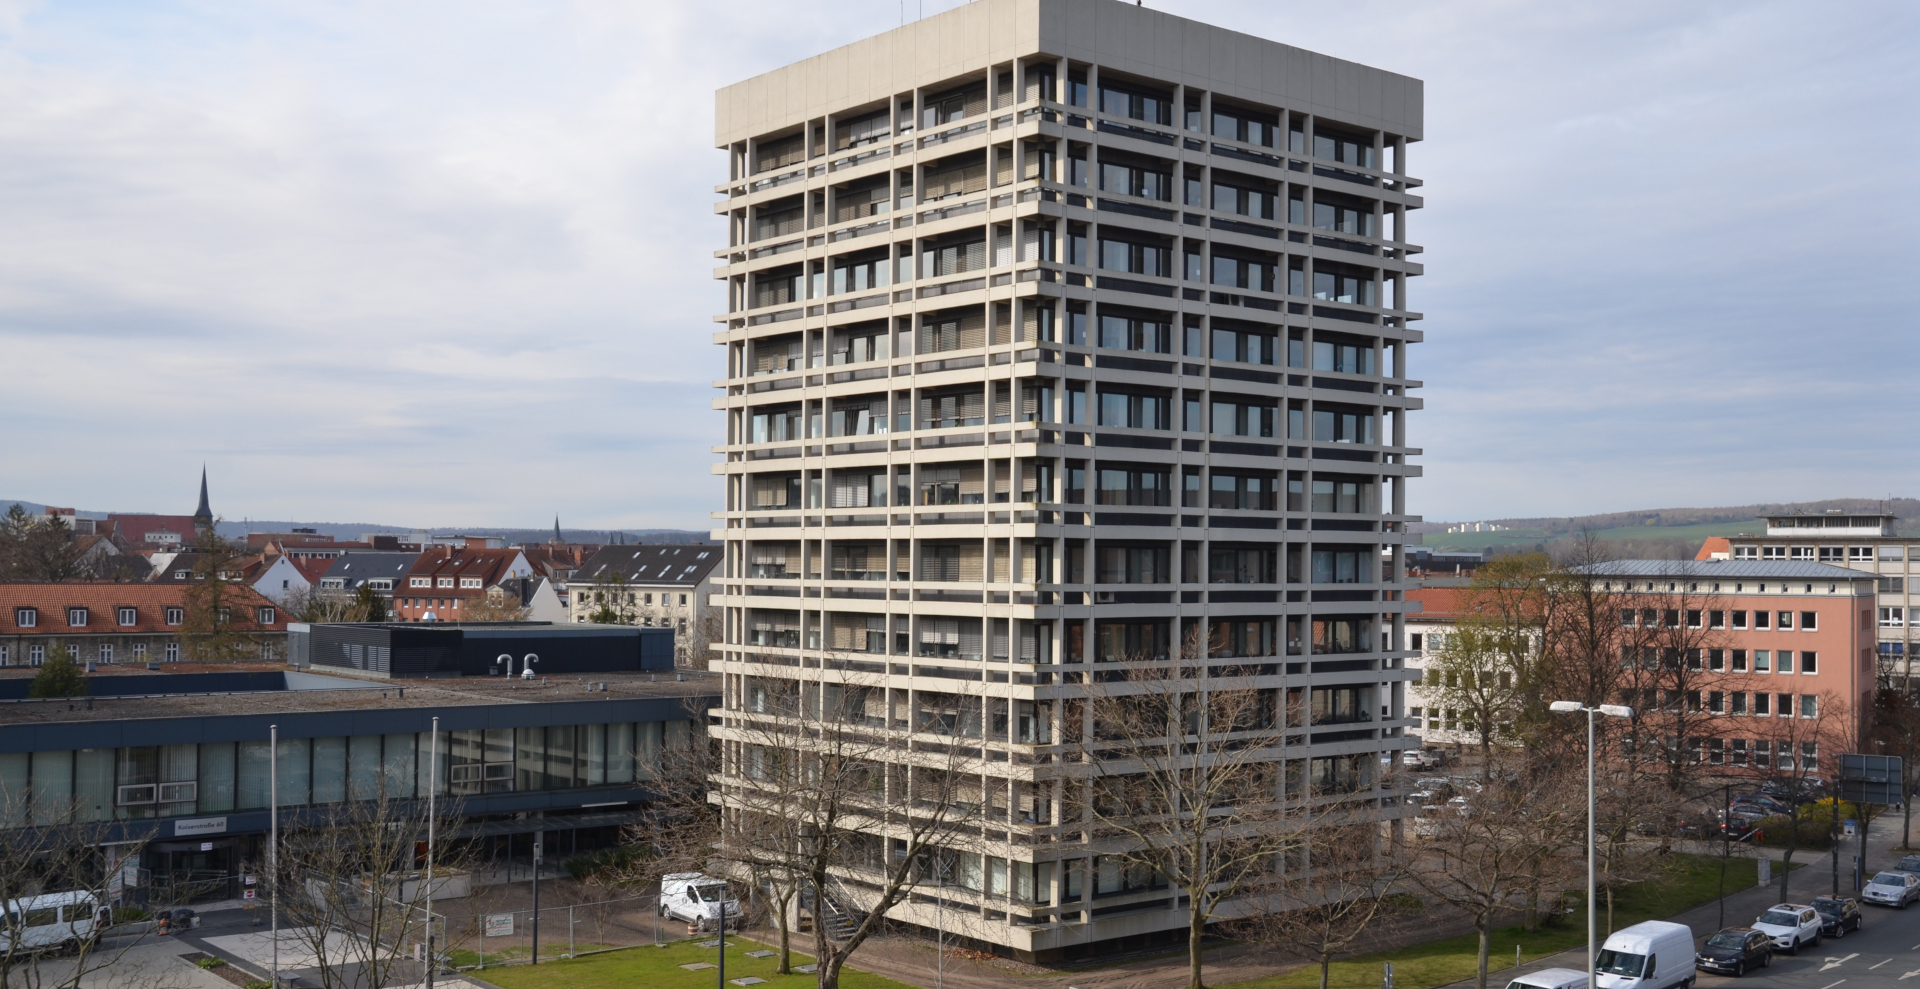 Justizzentrum Hildesheim